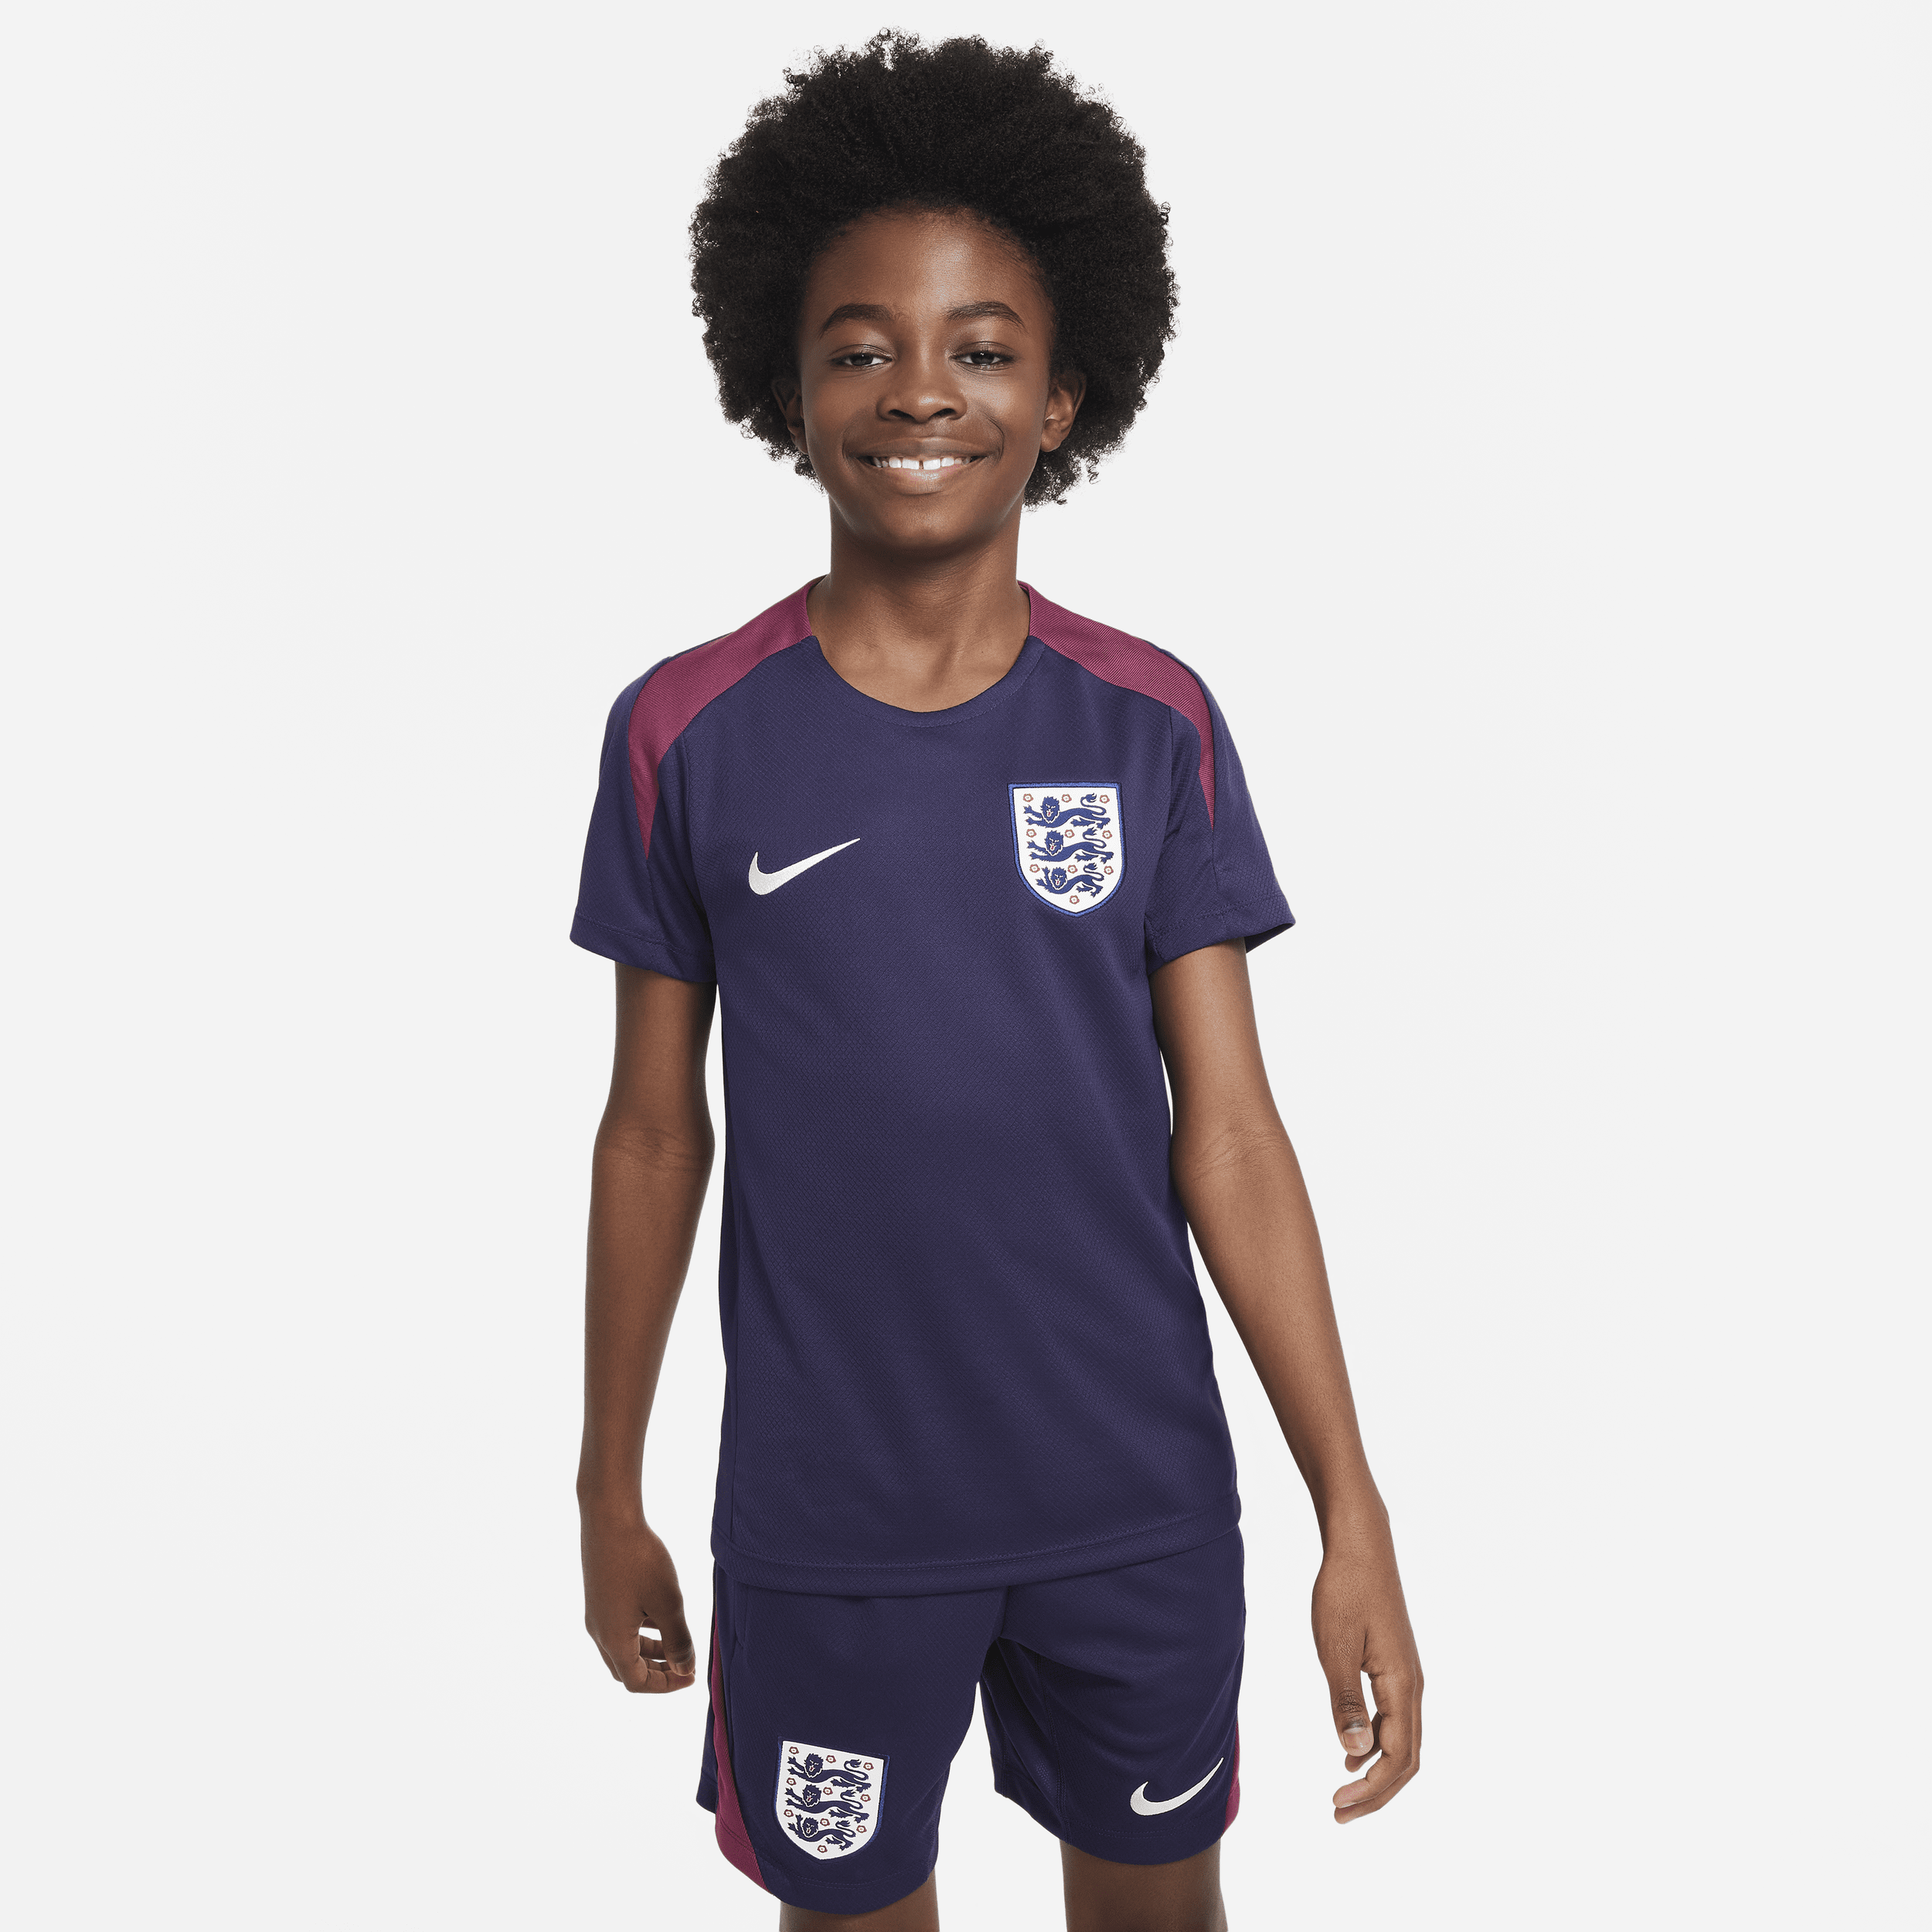 Engeland Strike Nike Dri-FIT knit voetbaltop met korte mouwen voor kids - Paars